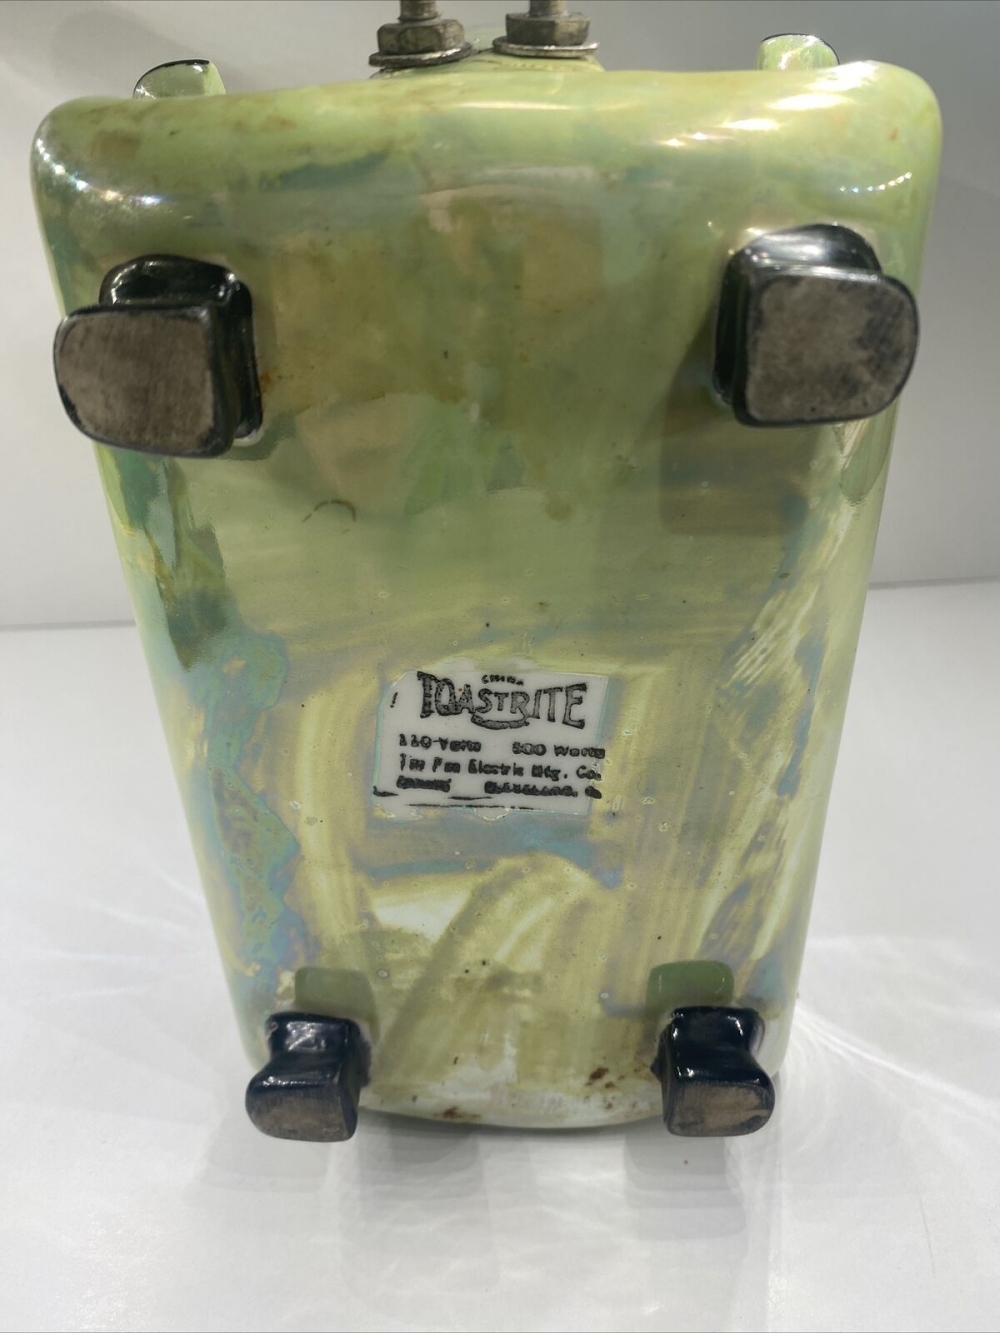 green lustreware Toastrite toaster